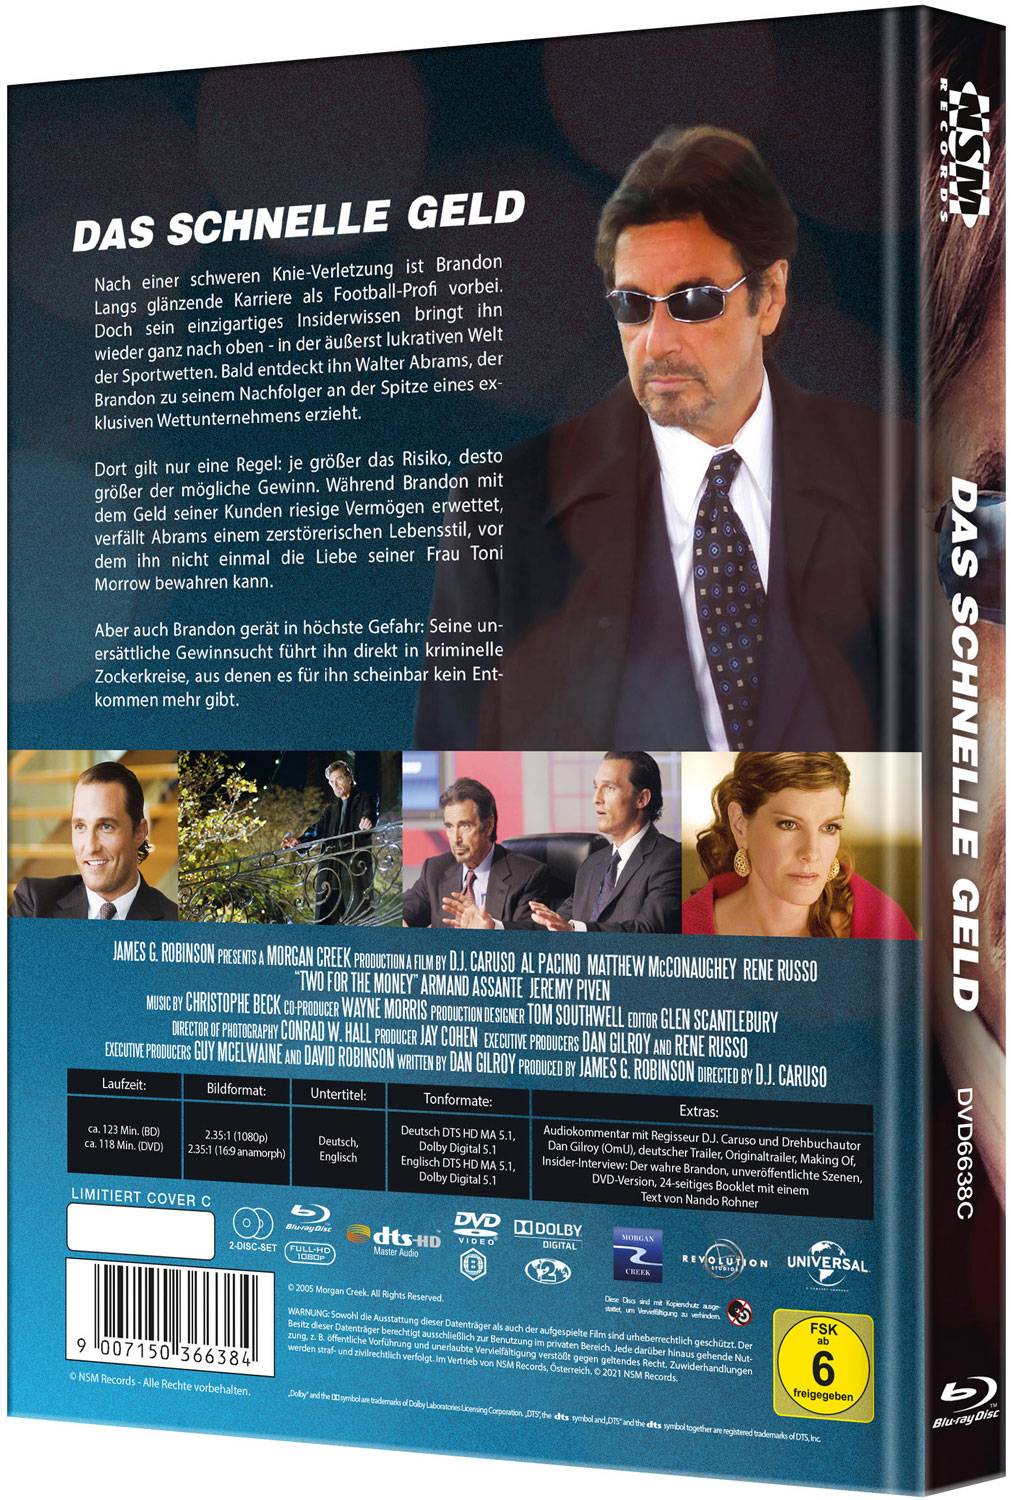 Das schnelle Geld (Mediabook) (DVD + Blu-ray) - Cover C